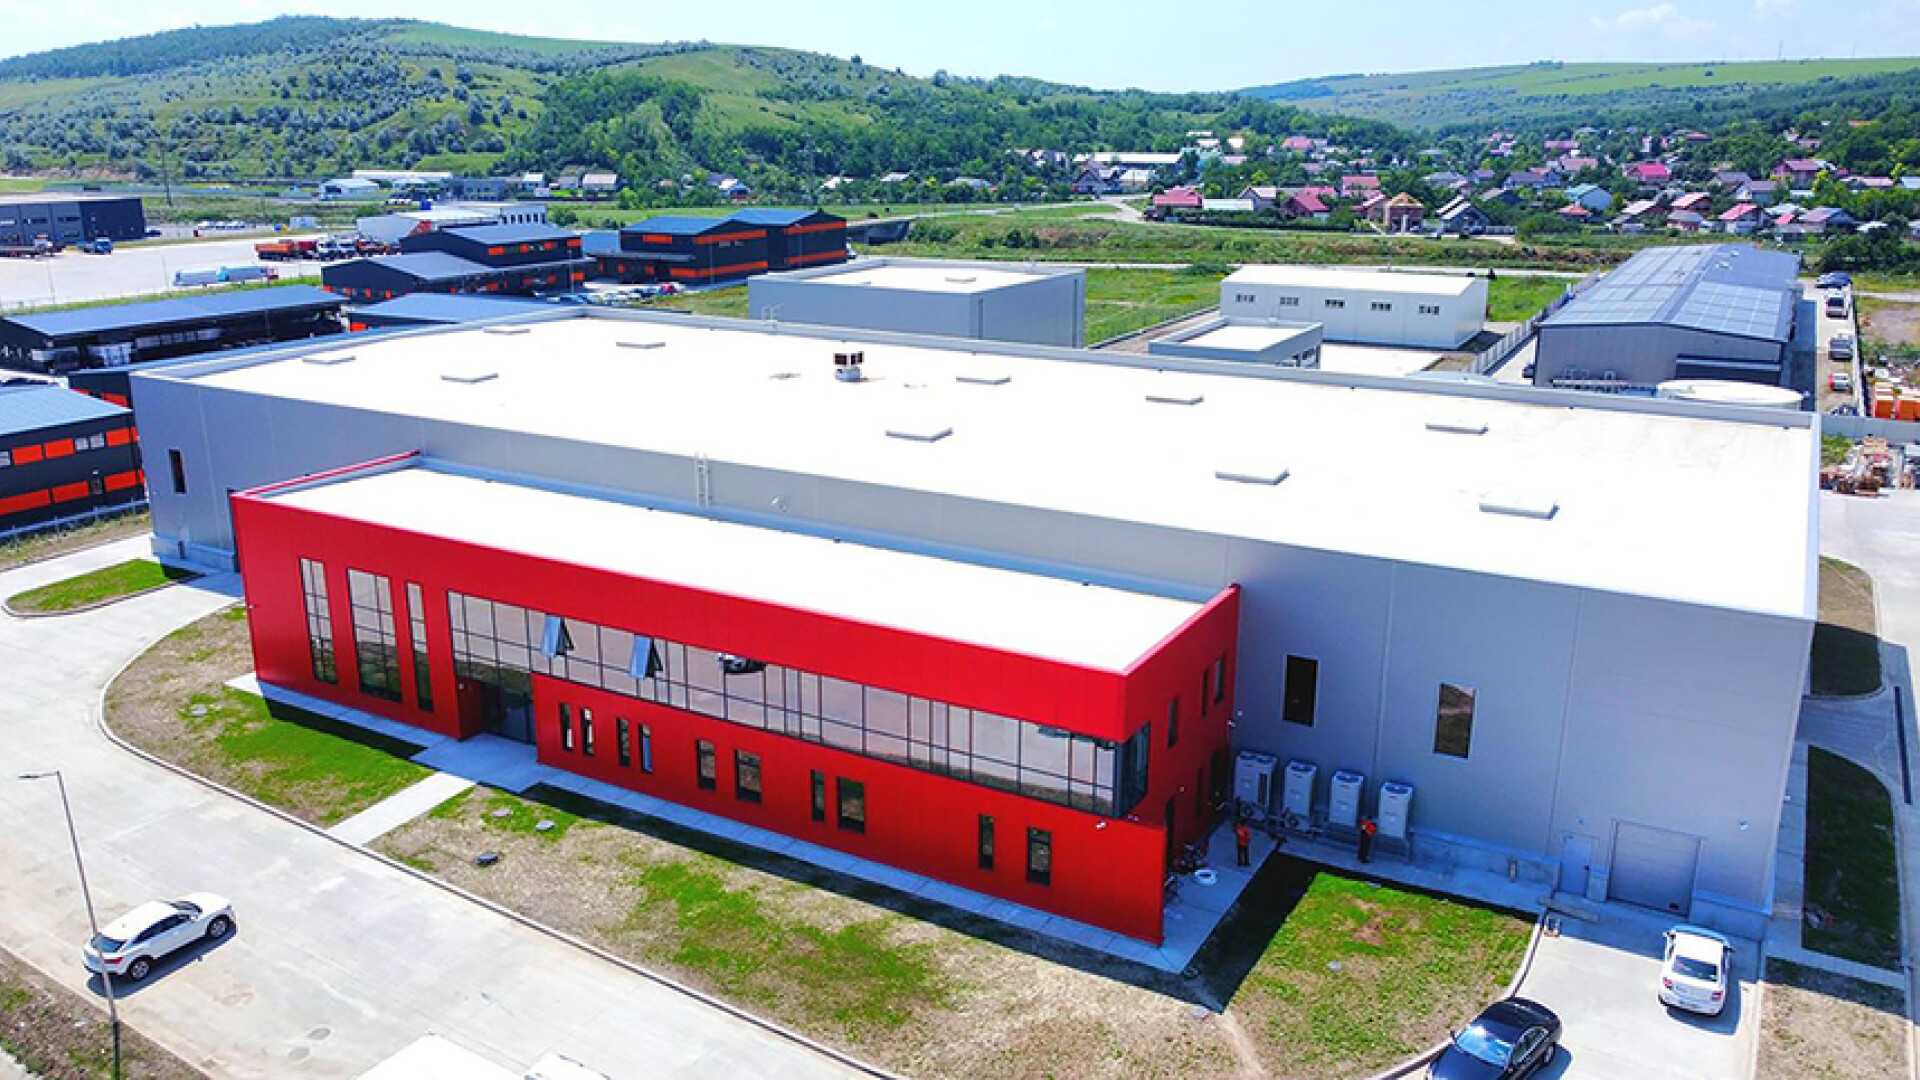 Misavan inaugurează o fabrică modernă